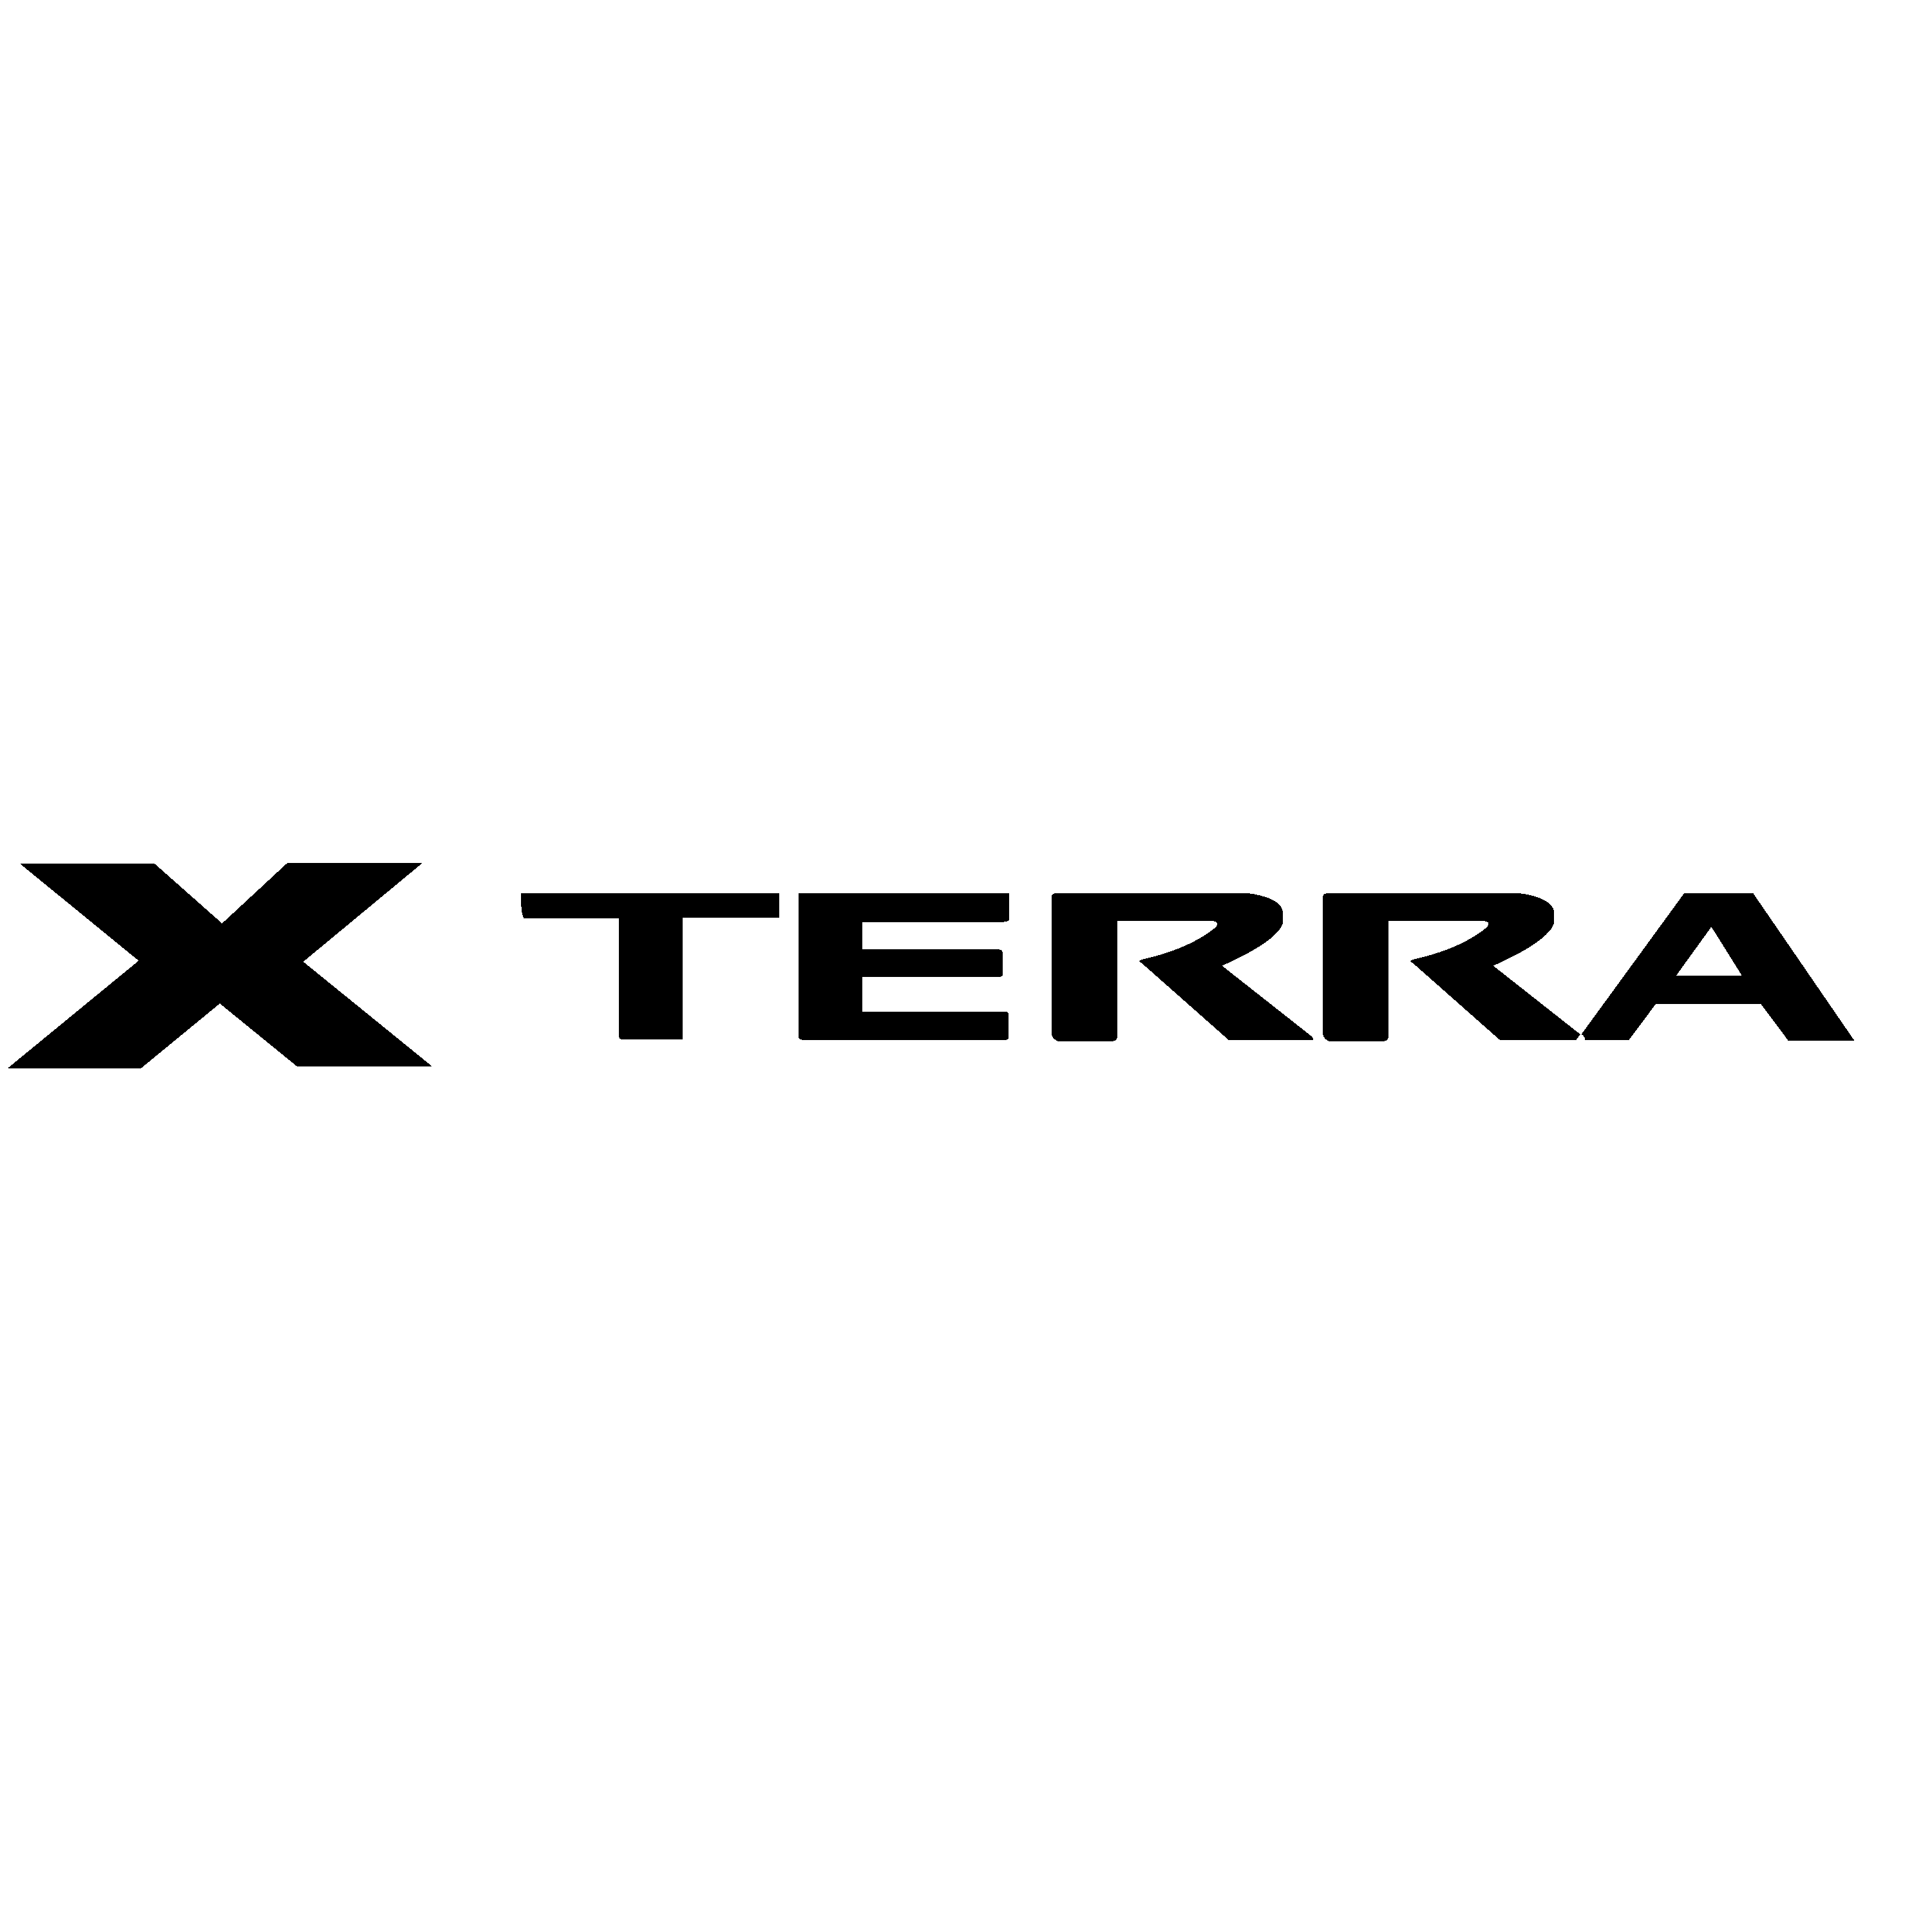 Xterra Logo Transparent Picture